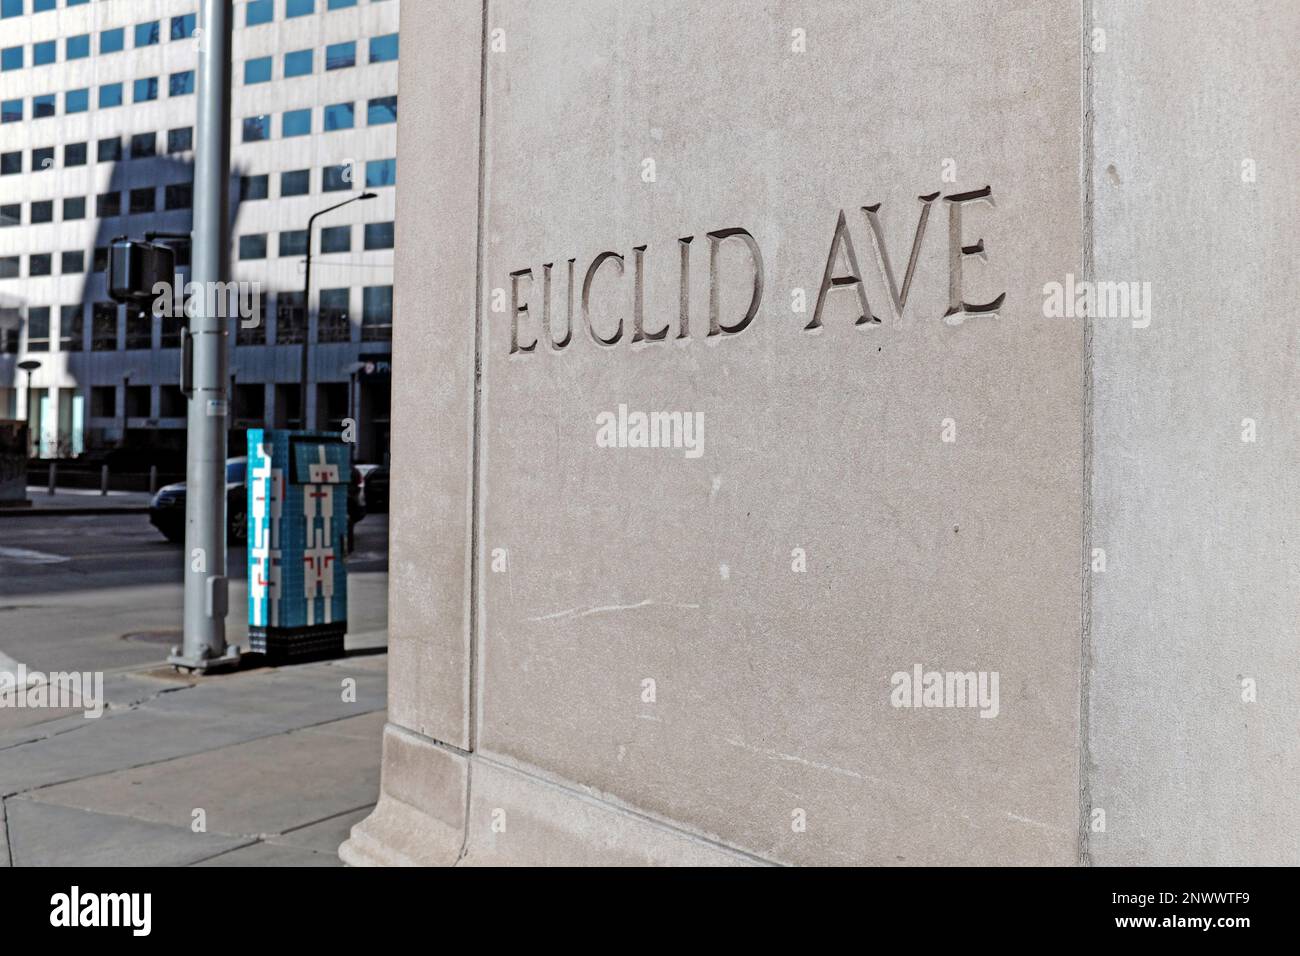 Euclid Avenue, la principale artère est-ouest à travers le centre-ville de Cleveland, Ohio, États-Unis a son nom inscrit à l'angle d'Euclid et East 9th. Banque D'Images